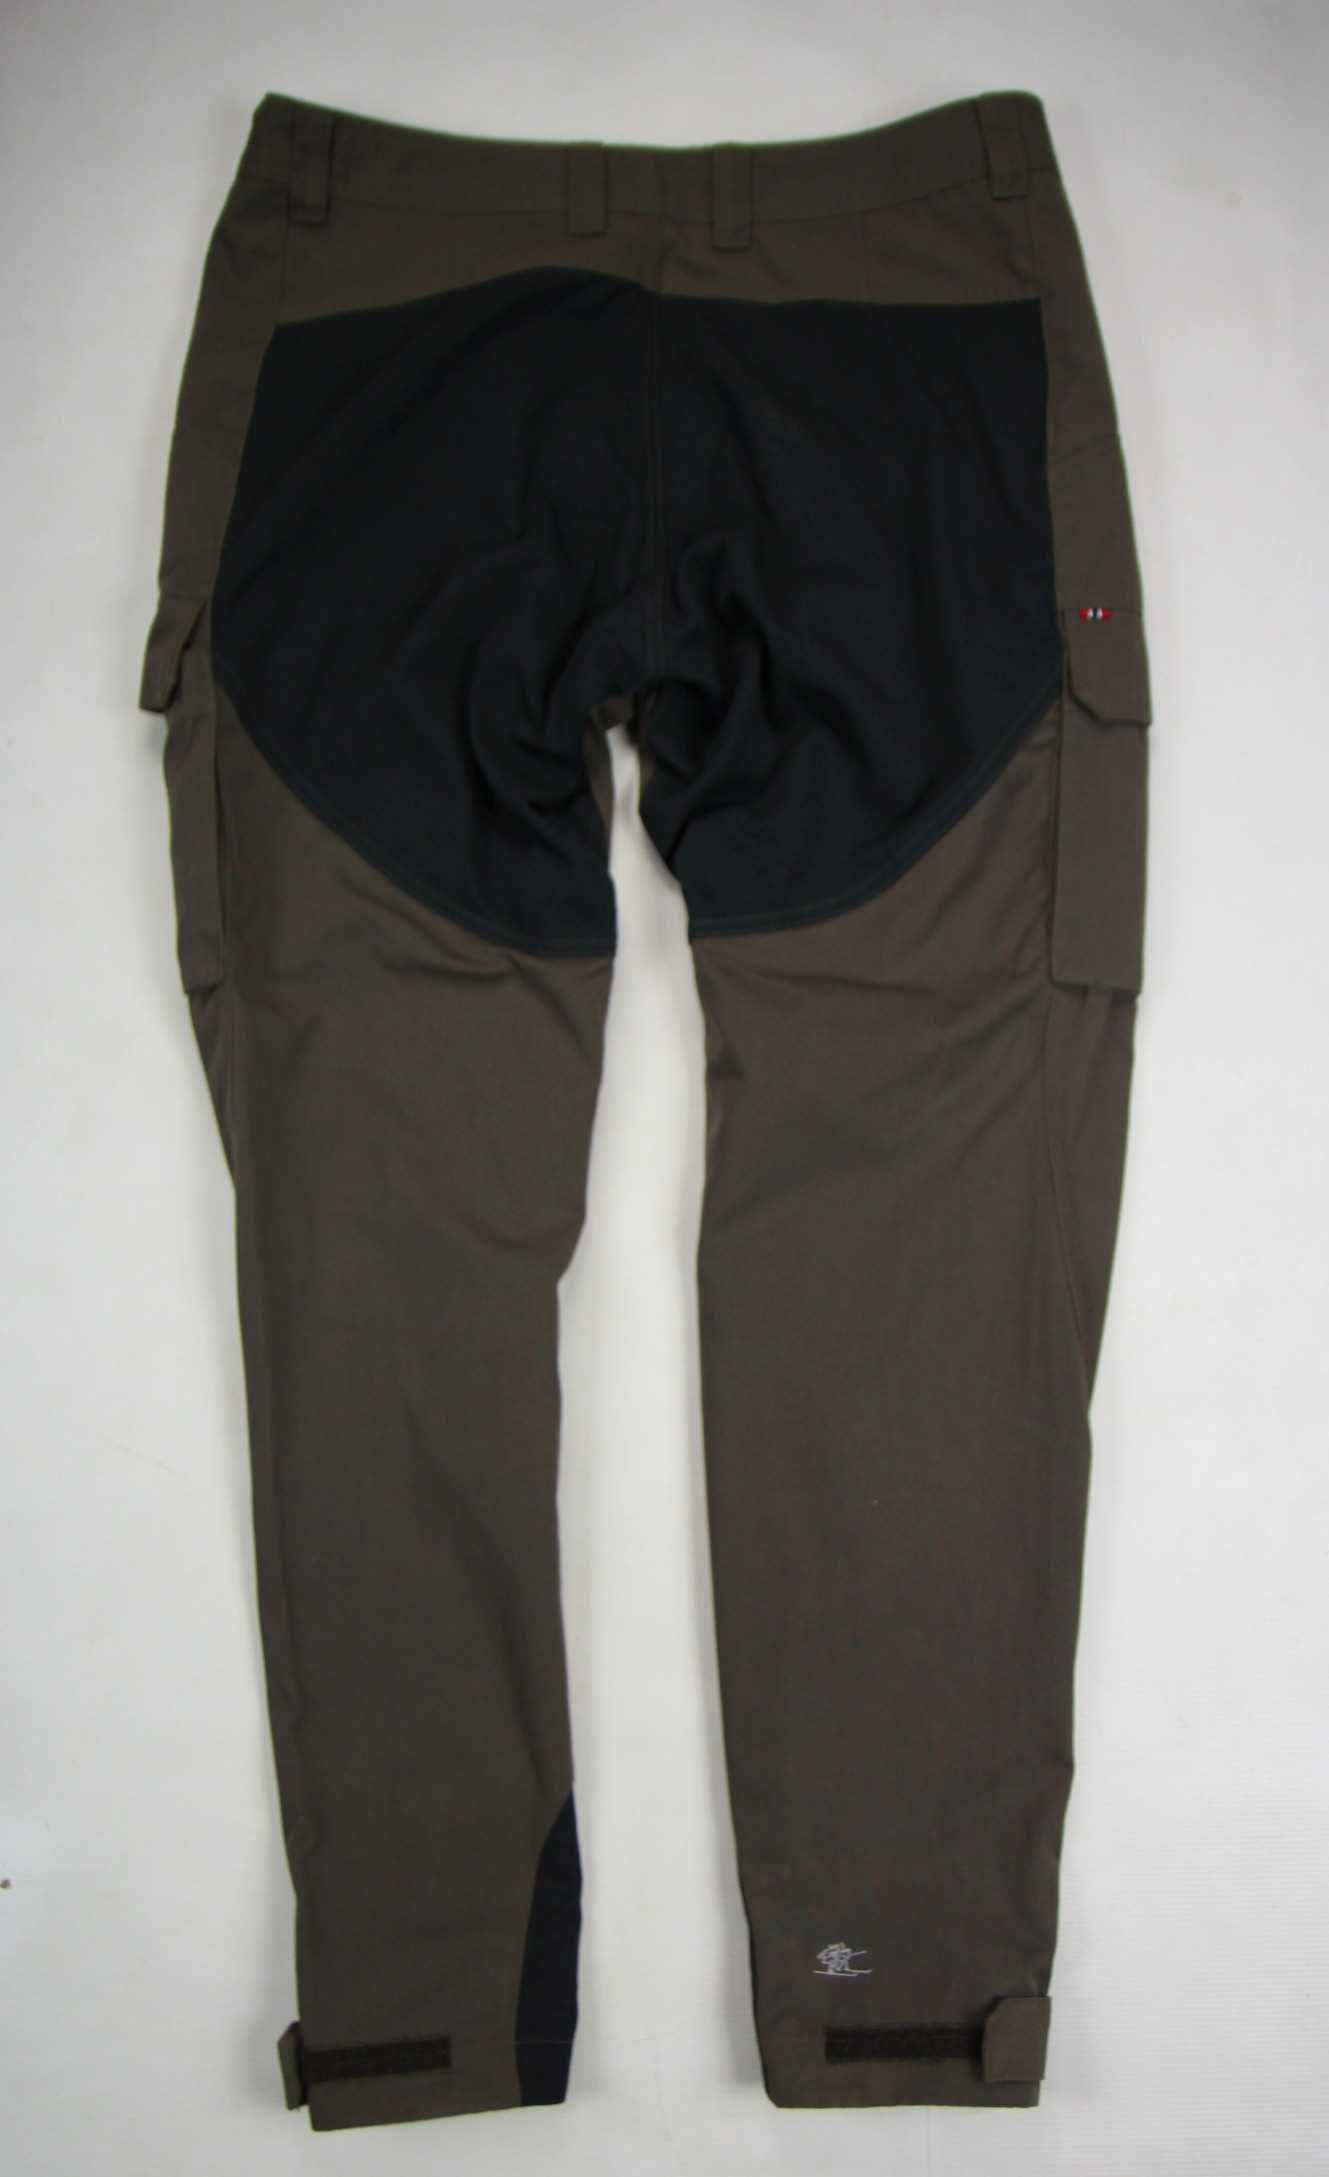 Bergans of Norway damskie spodnie trekkingowe rozmiar L